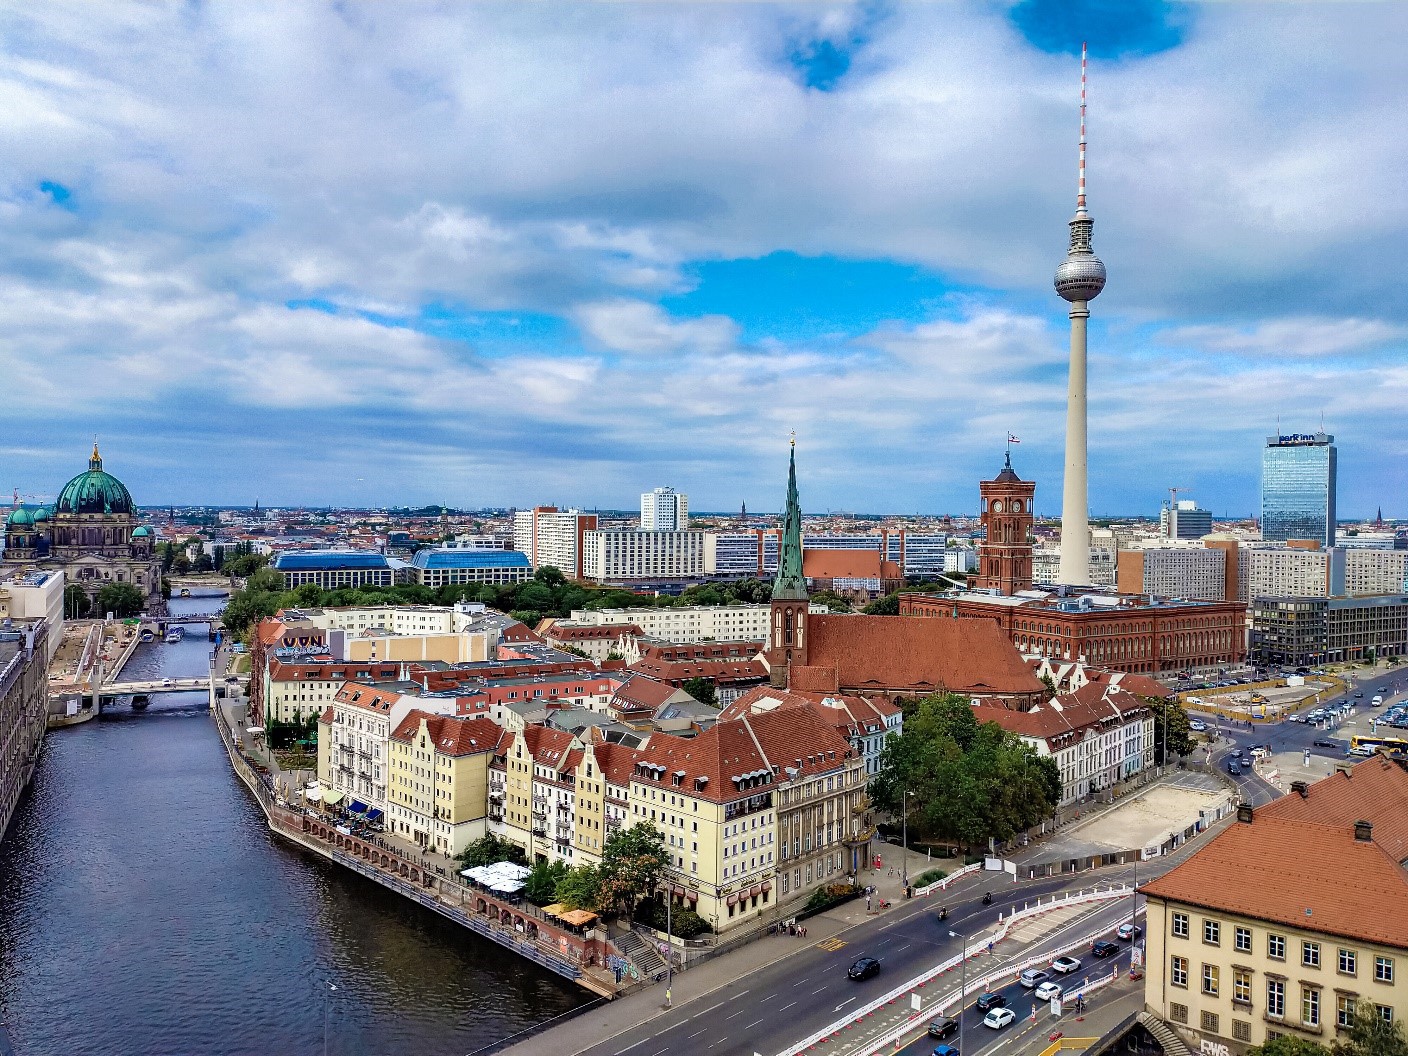 Mùa thu thủ đô Berlin hiện lên đầy rực rỡ qua bốn góc ảnh tuyệt đẹp của OPPO A9 2020 - Ảnh 10.